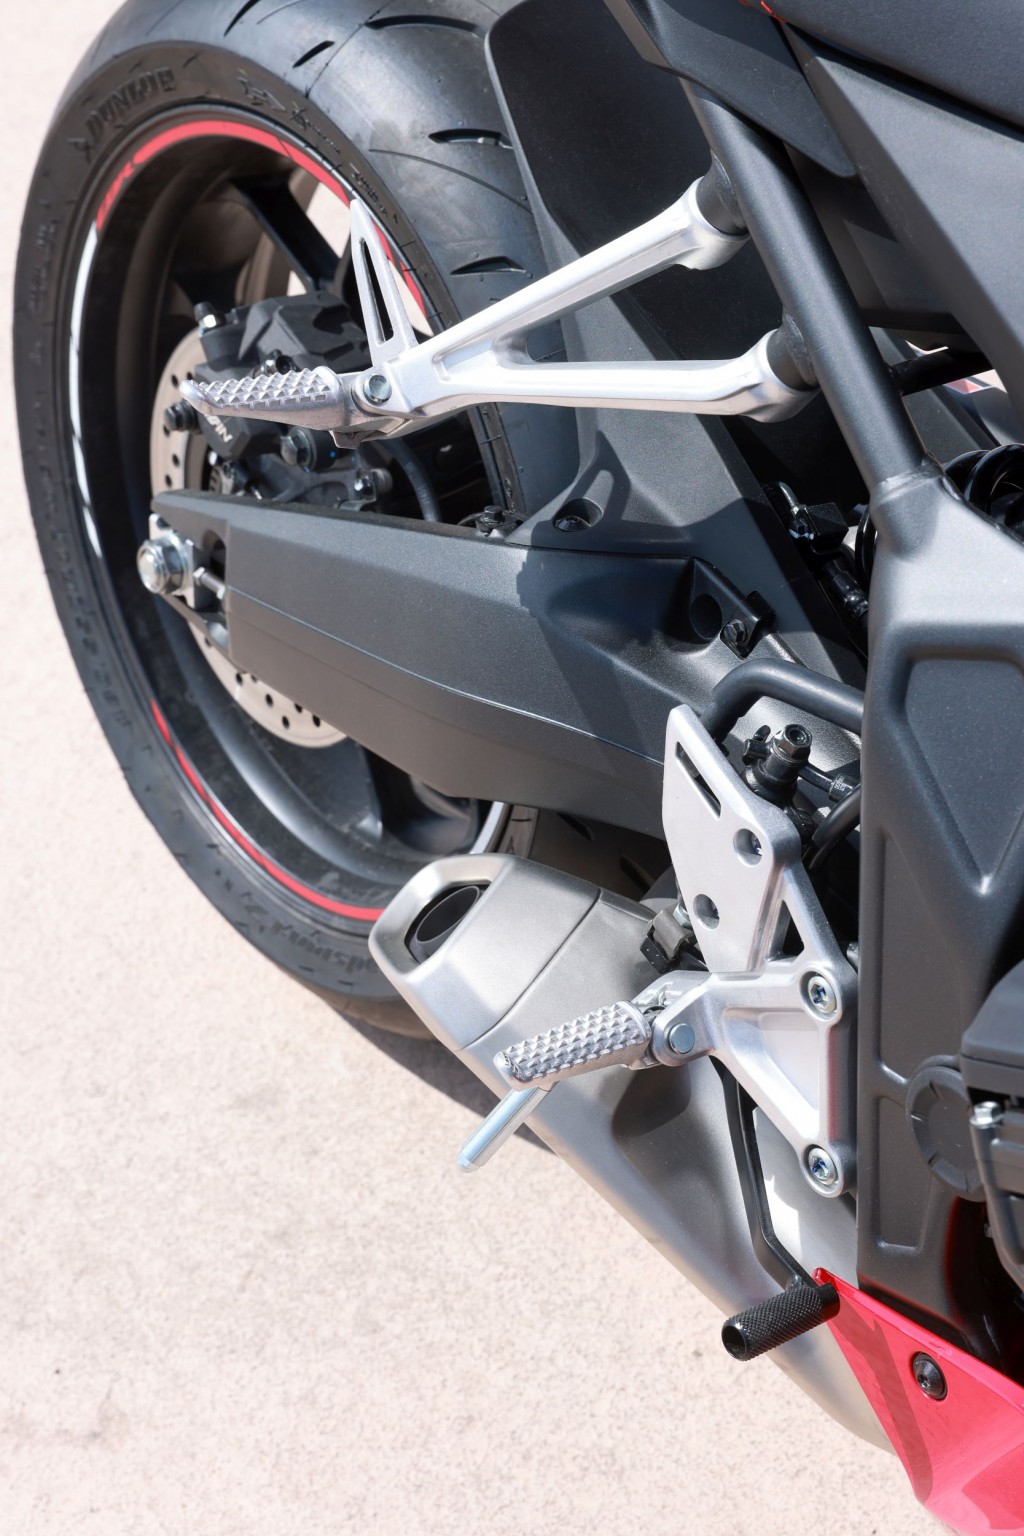 Test elektronske kvačila Honda CBR650R 2024

Honda je nedavno predstavila novu verziju svog popularnog motocikla CBR650R, koji sada dolazi sa elektronskim kvačilom, poznatim kao E-Clutch. Ova inovacija obećava da će olakšati vožnju omogućavajući vozačima da menjaju brzine bez potrebe za ručnim korišćenjem kvačila. 

Elektronsko kvačilo funkcioniše tako što automatski reguliše pritisak potreban za aktiviranje kvačila, što omogućava glatke promene brzina bez prekida u isporuci snage. Ovo je posebno korisno pri vožnji u gradu, gde česte promene brzina mogu biti naporne i otežavaju koncentraciju na saobraćaj.

Testiranje ovog sistema pokazalo je da E-Clutch ne samo da olakšava upravljanje motociklom, već i povećava sigurnost vožnje. Vozači mogu da se fokusiraju na okolinu bez brige o mehaničkim aspektima vožnje, što je posebno važno za manje iskusne vozače.

Honda CBR650R sa elektronskim kvačilom biće dostupna na tržištu od 2024. godine i očekuje se da će privući veliki broj kupaca, kako iskusnih tako i onih koji tek ulaze u svet motociklizma. Ovaj model predstavlja značajan korak napred u tehnologiji motocikala i potencijalno postavlja nove standarde u industriji. - Слика 57